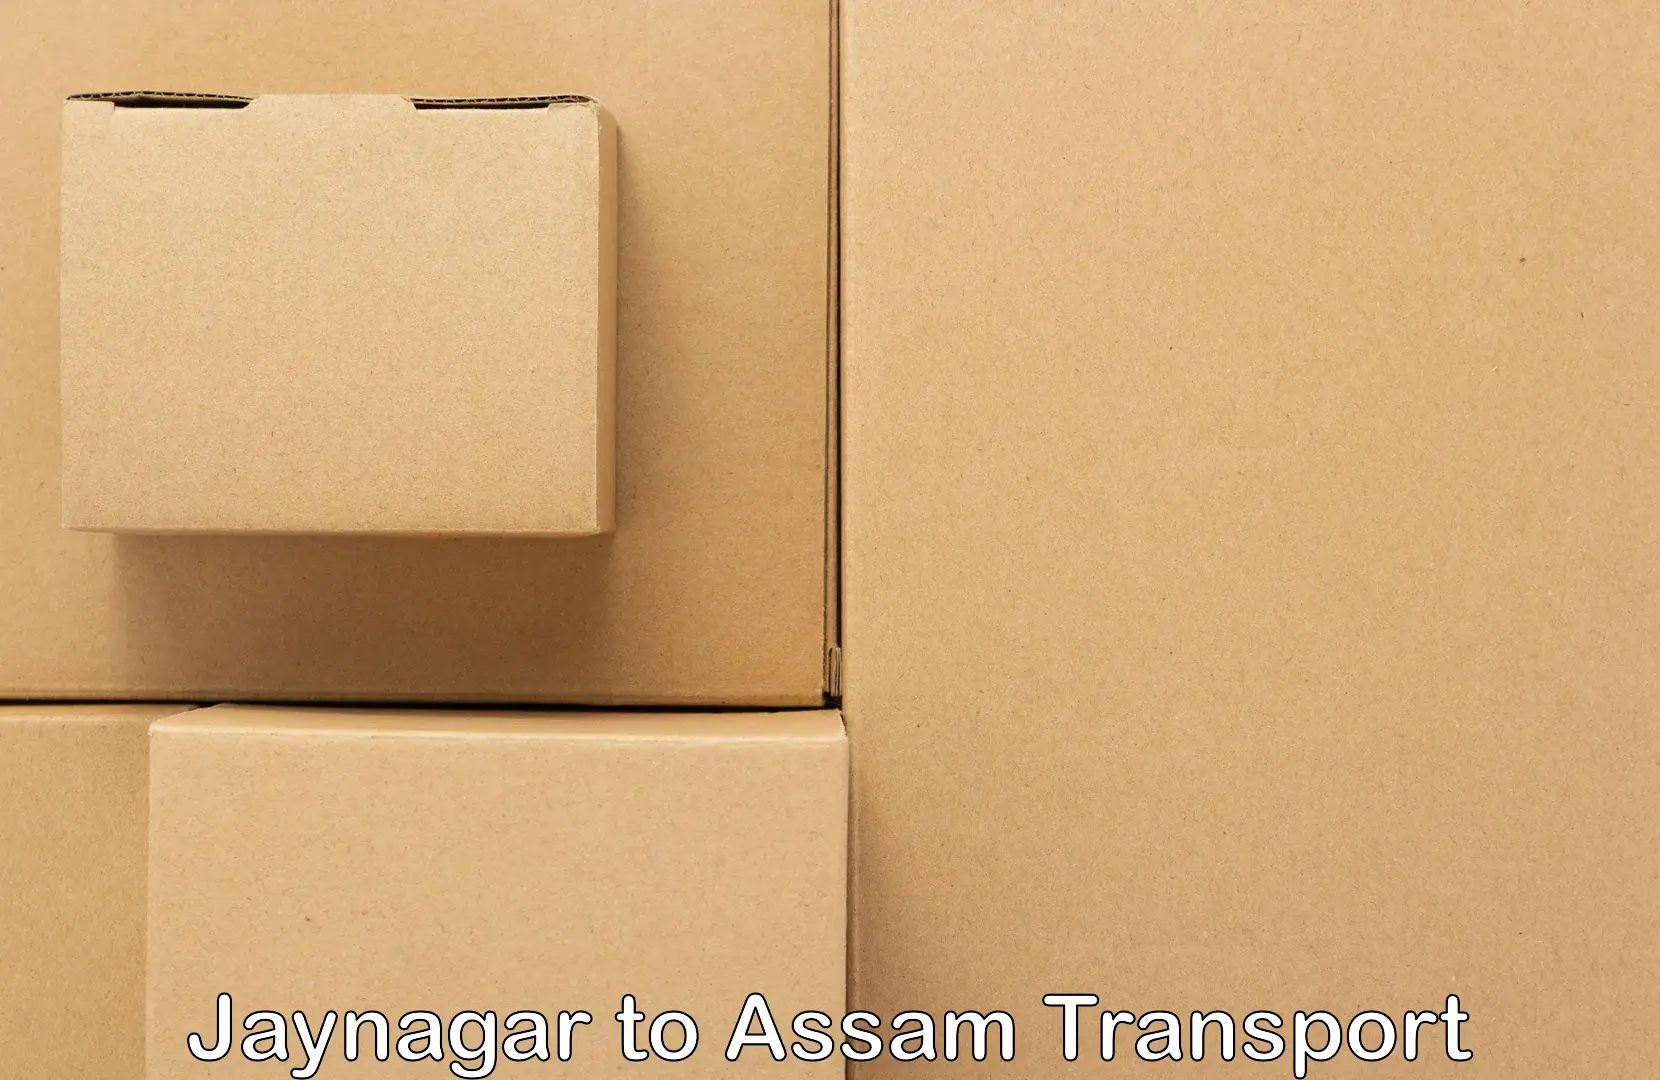 Online transport service Jaynagar to Hojai Lanka